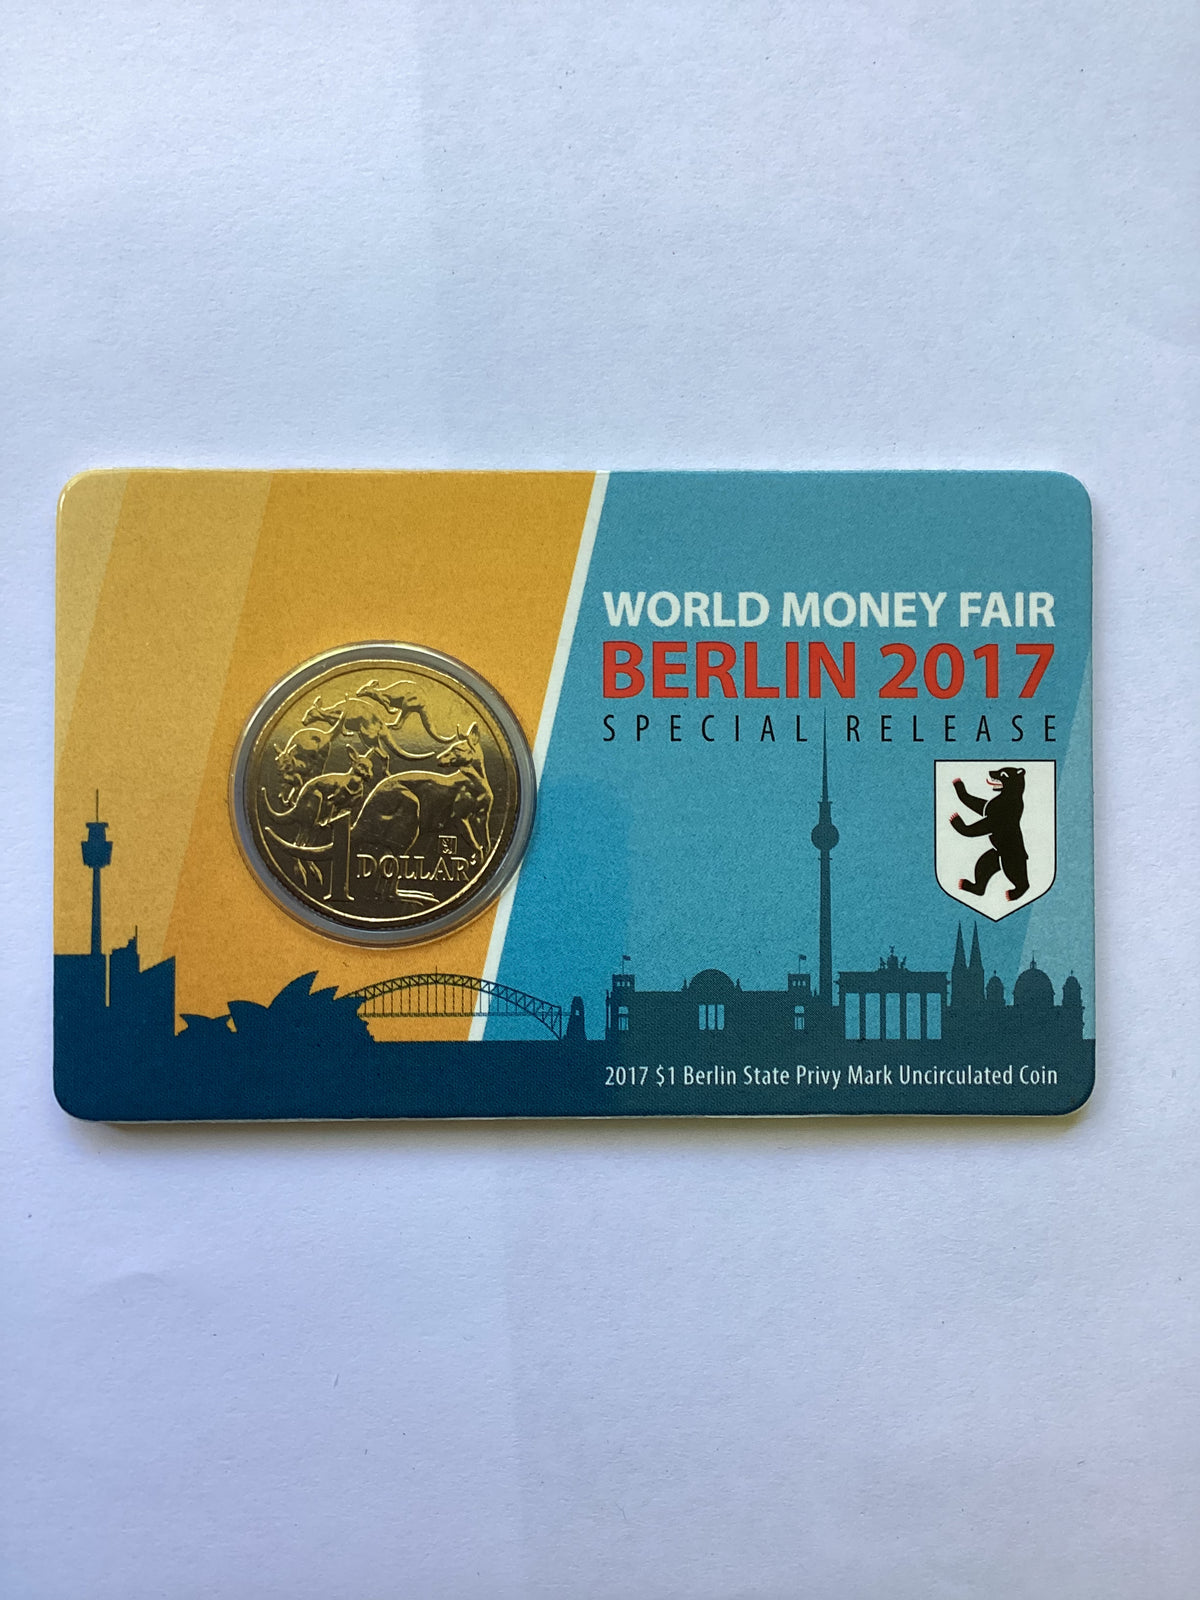 2017 $1 Berlin State Privy Mark Uncirculated Coin. World Money Fair Berlin